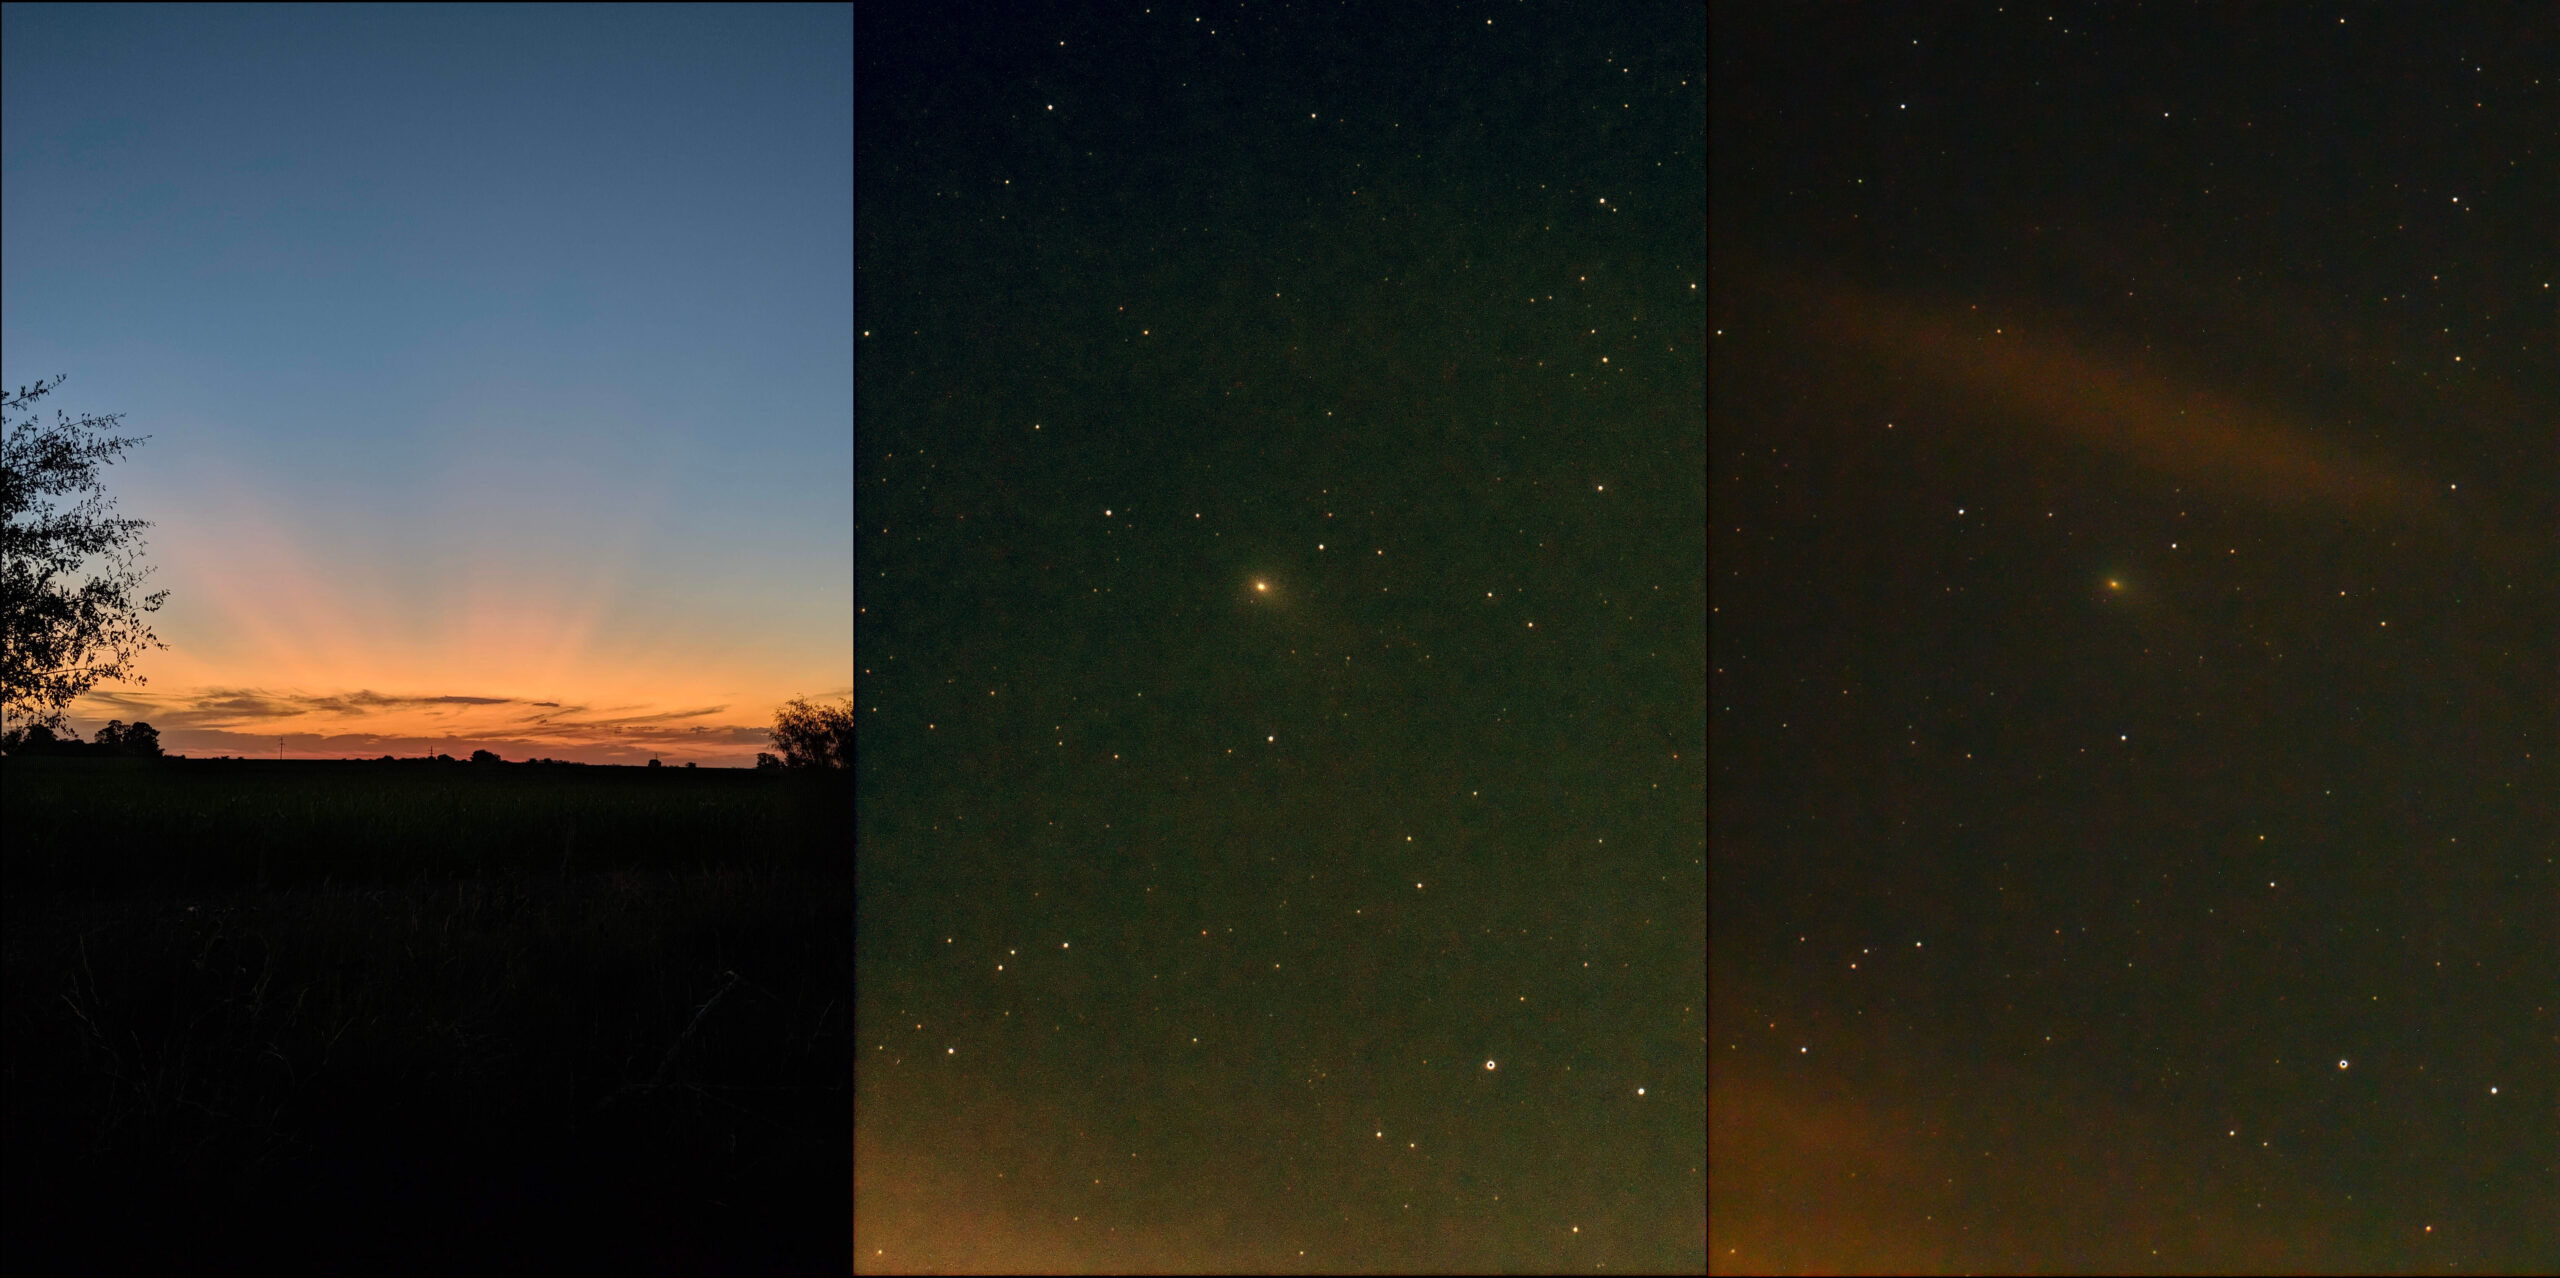 A la izquierda, el atardecer con horizonte despejado en la localidad de Julio Arditi. Al centro y a la derecha, dos imágenes del cometa, que aparece como una pequeña mancha difusa debido a su cola desplegada.